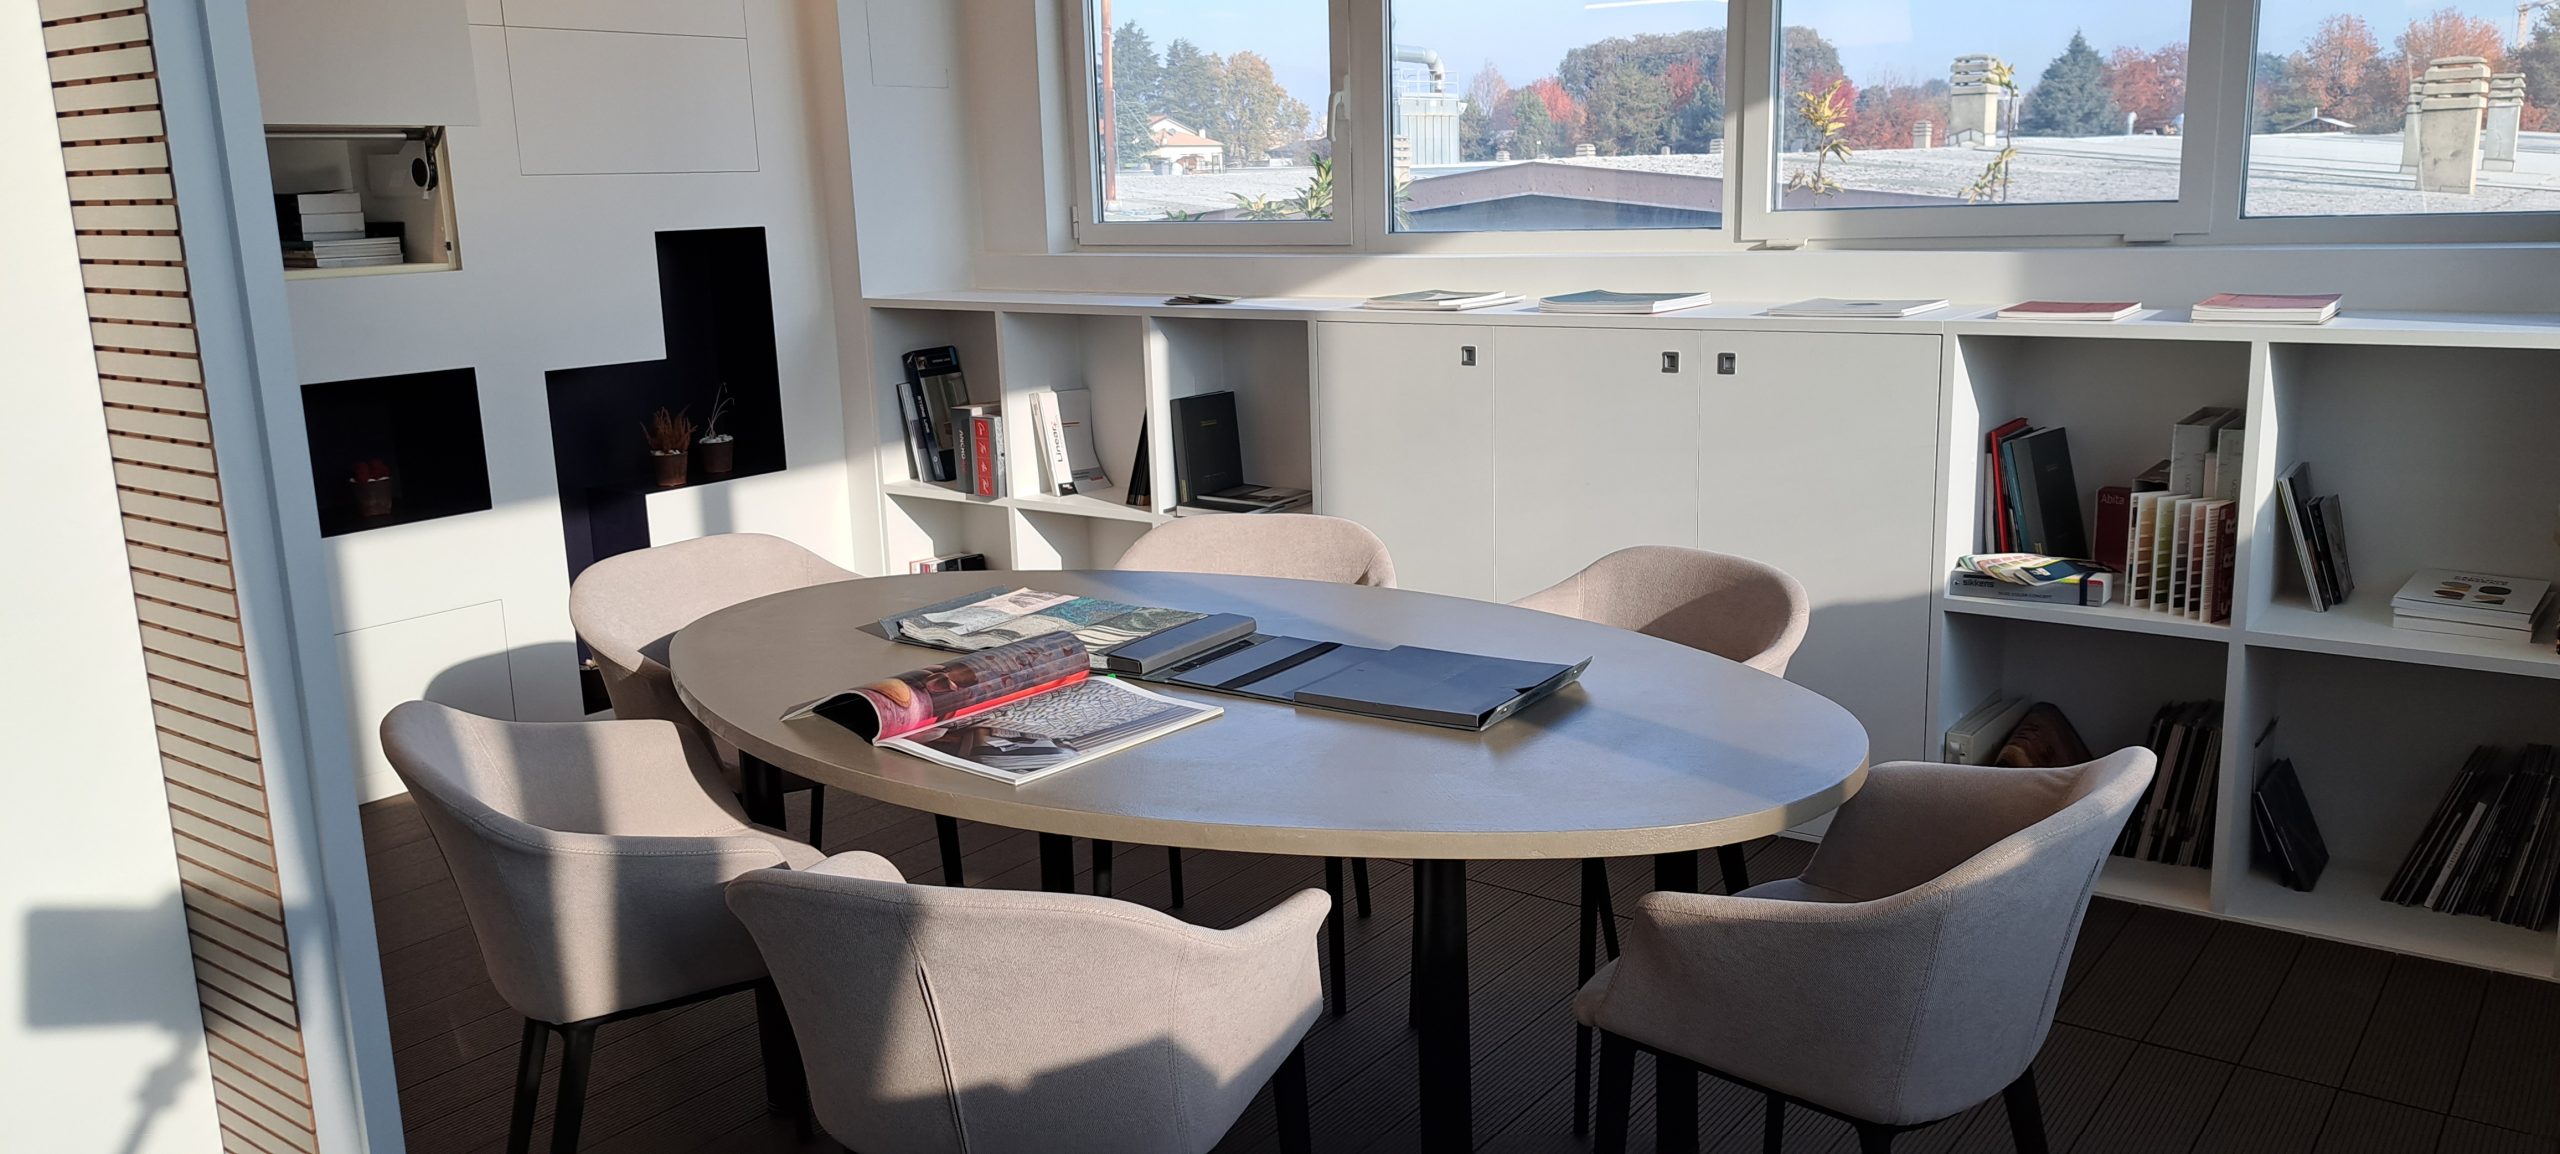 Ufficio moderno, tavolo riunioni e libreria design.